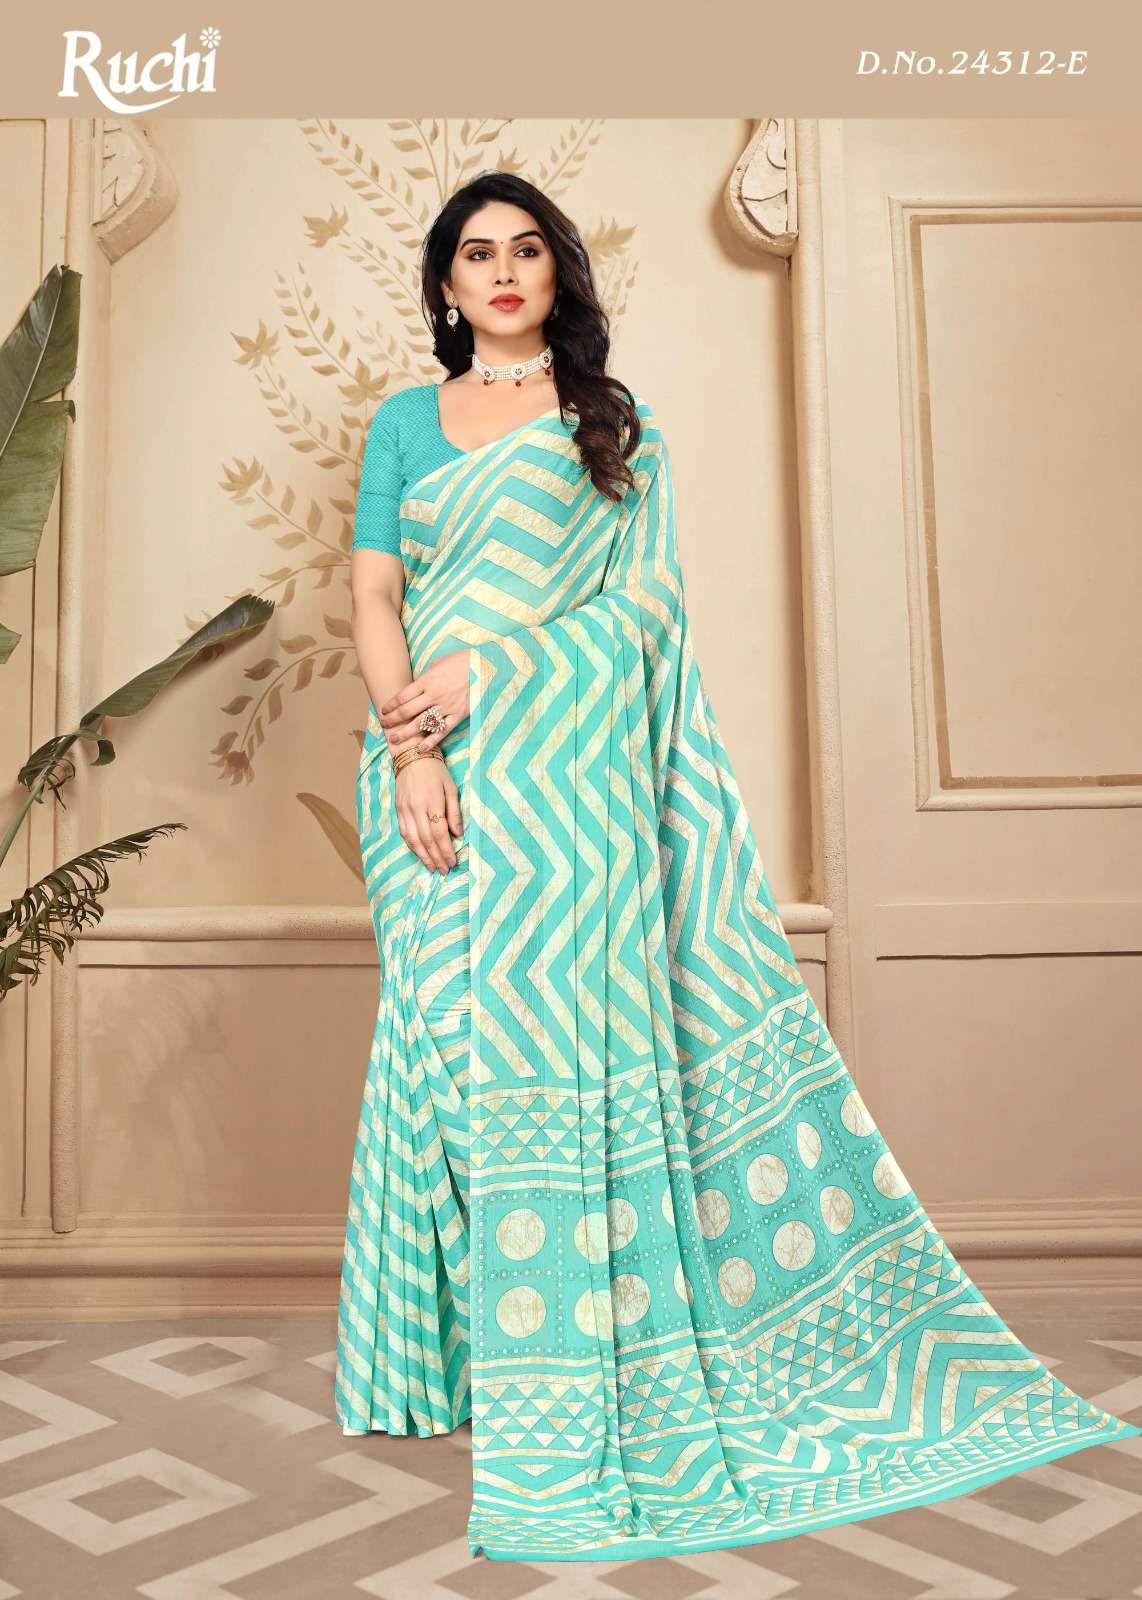 ruchi star chiffon 24312 fancy daily wear saree collection 